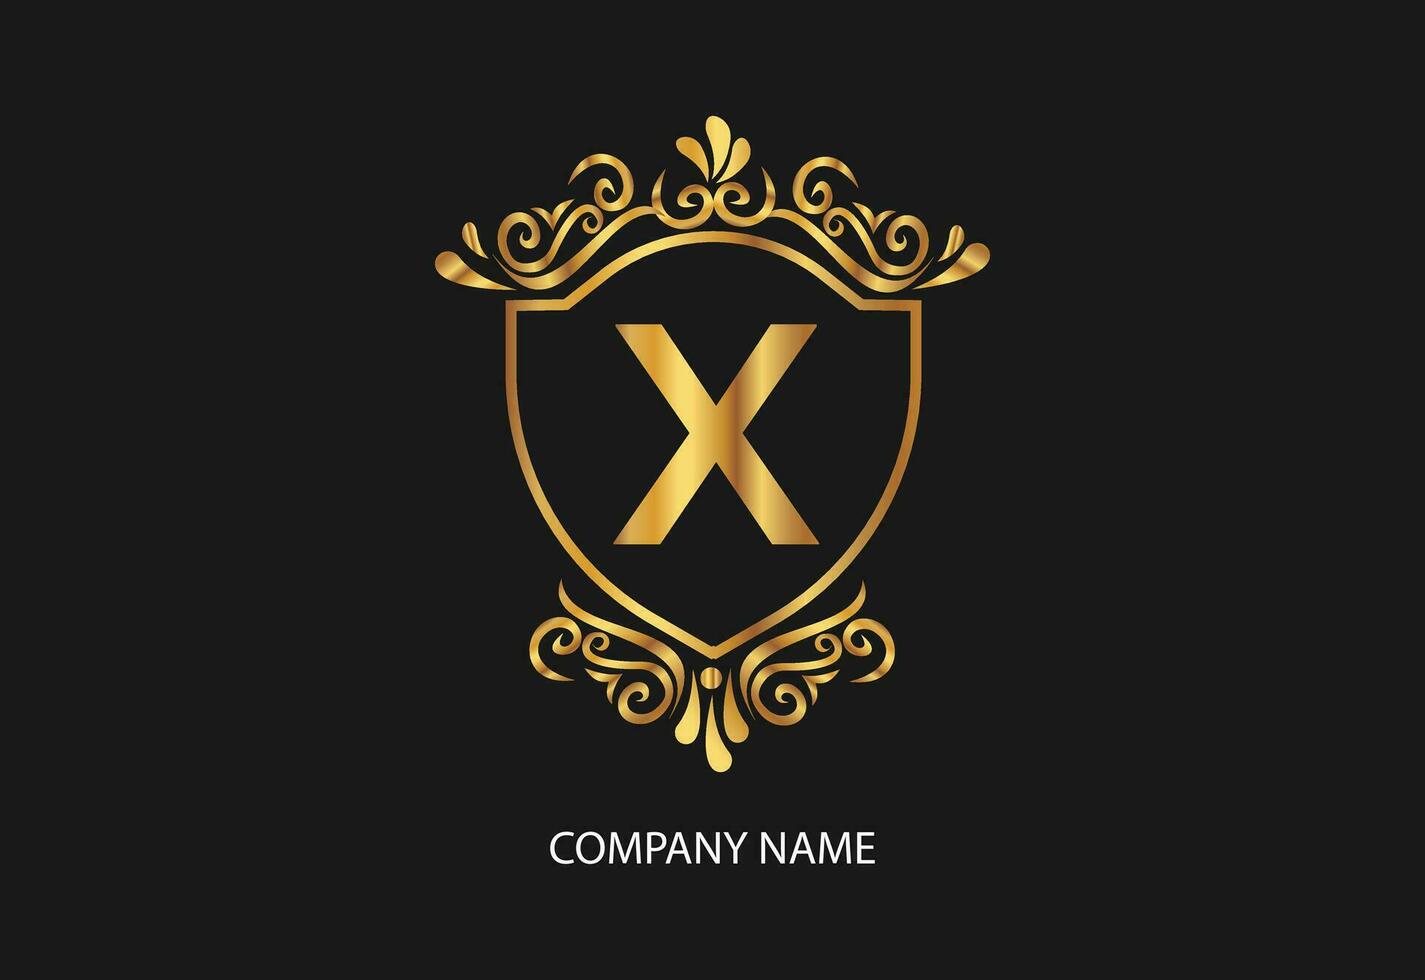 laatste X natuurlijk en biologisch logo modern ontwerp. natuurlijk logo voor branding, zakelijke identiteit en bedrijf kaart vector